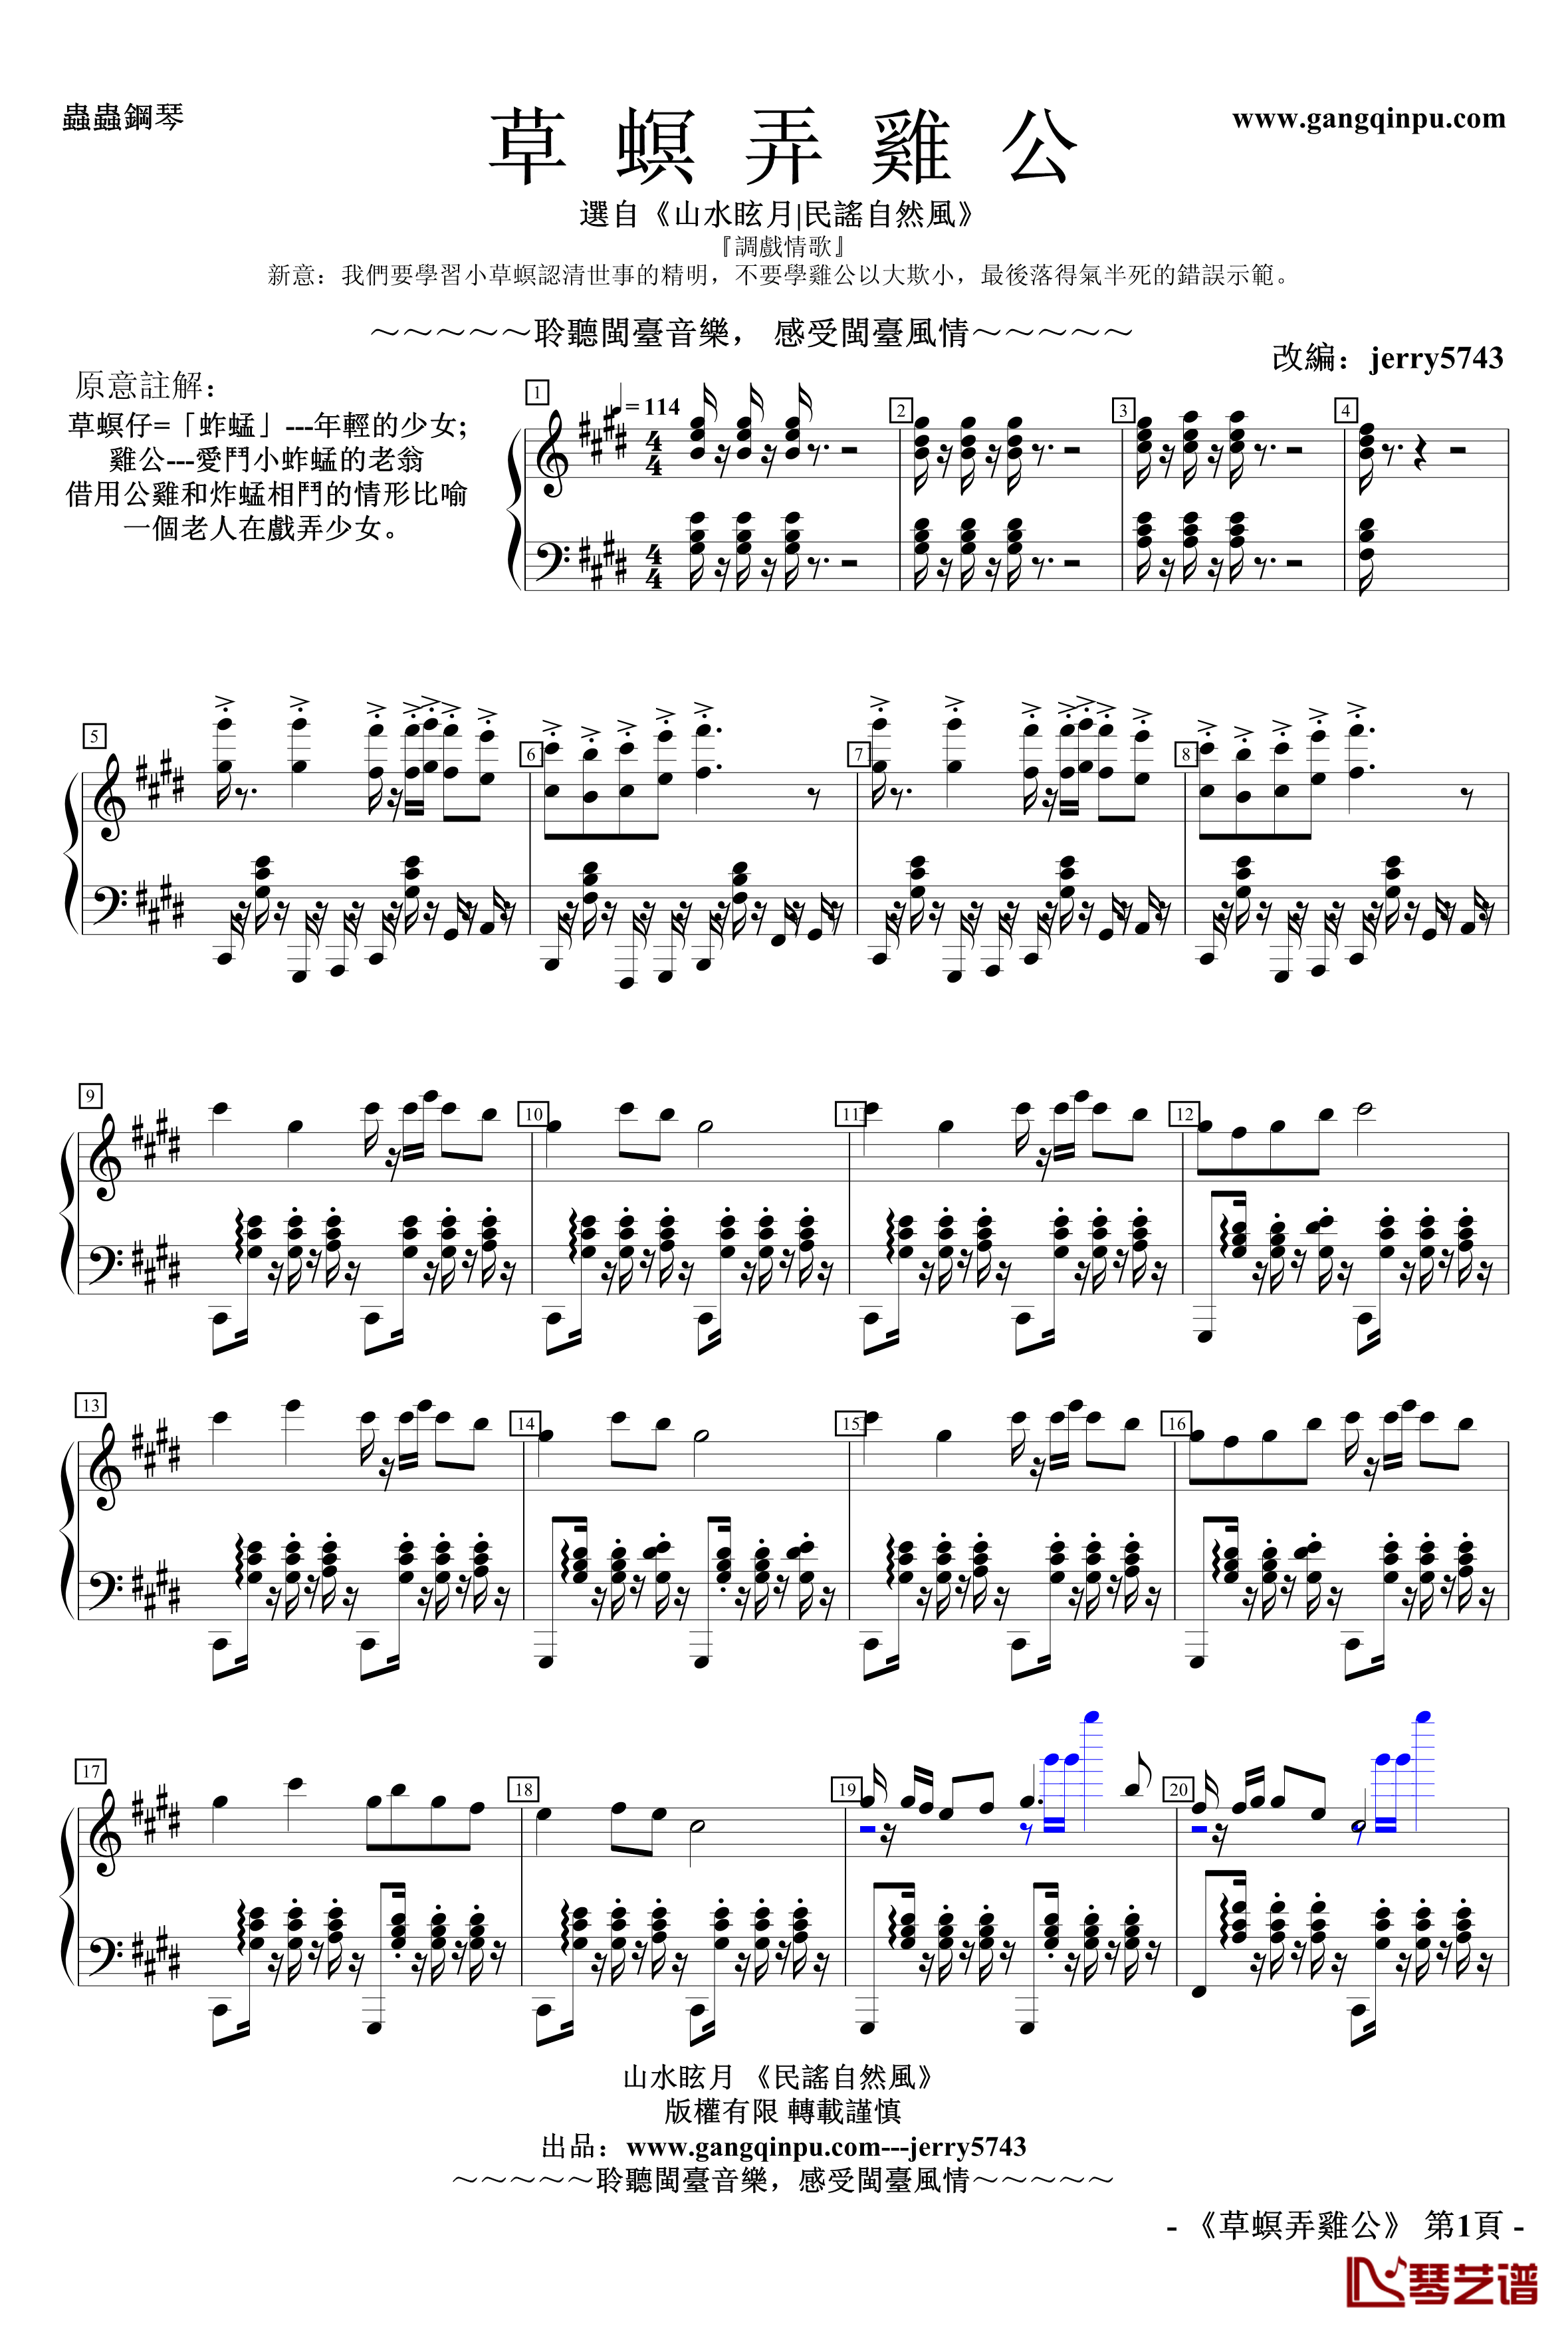 草螟弄雞公钢琴谱-jerry5743-自然風No.1